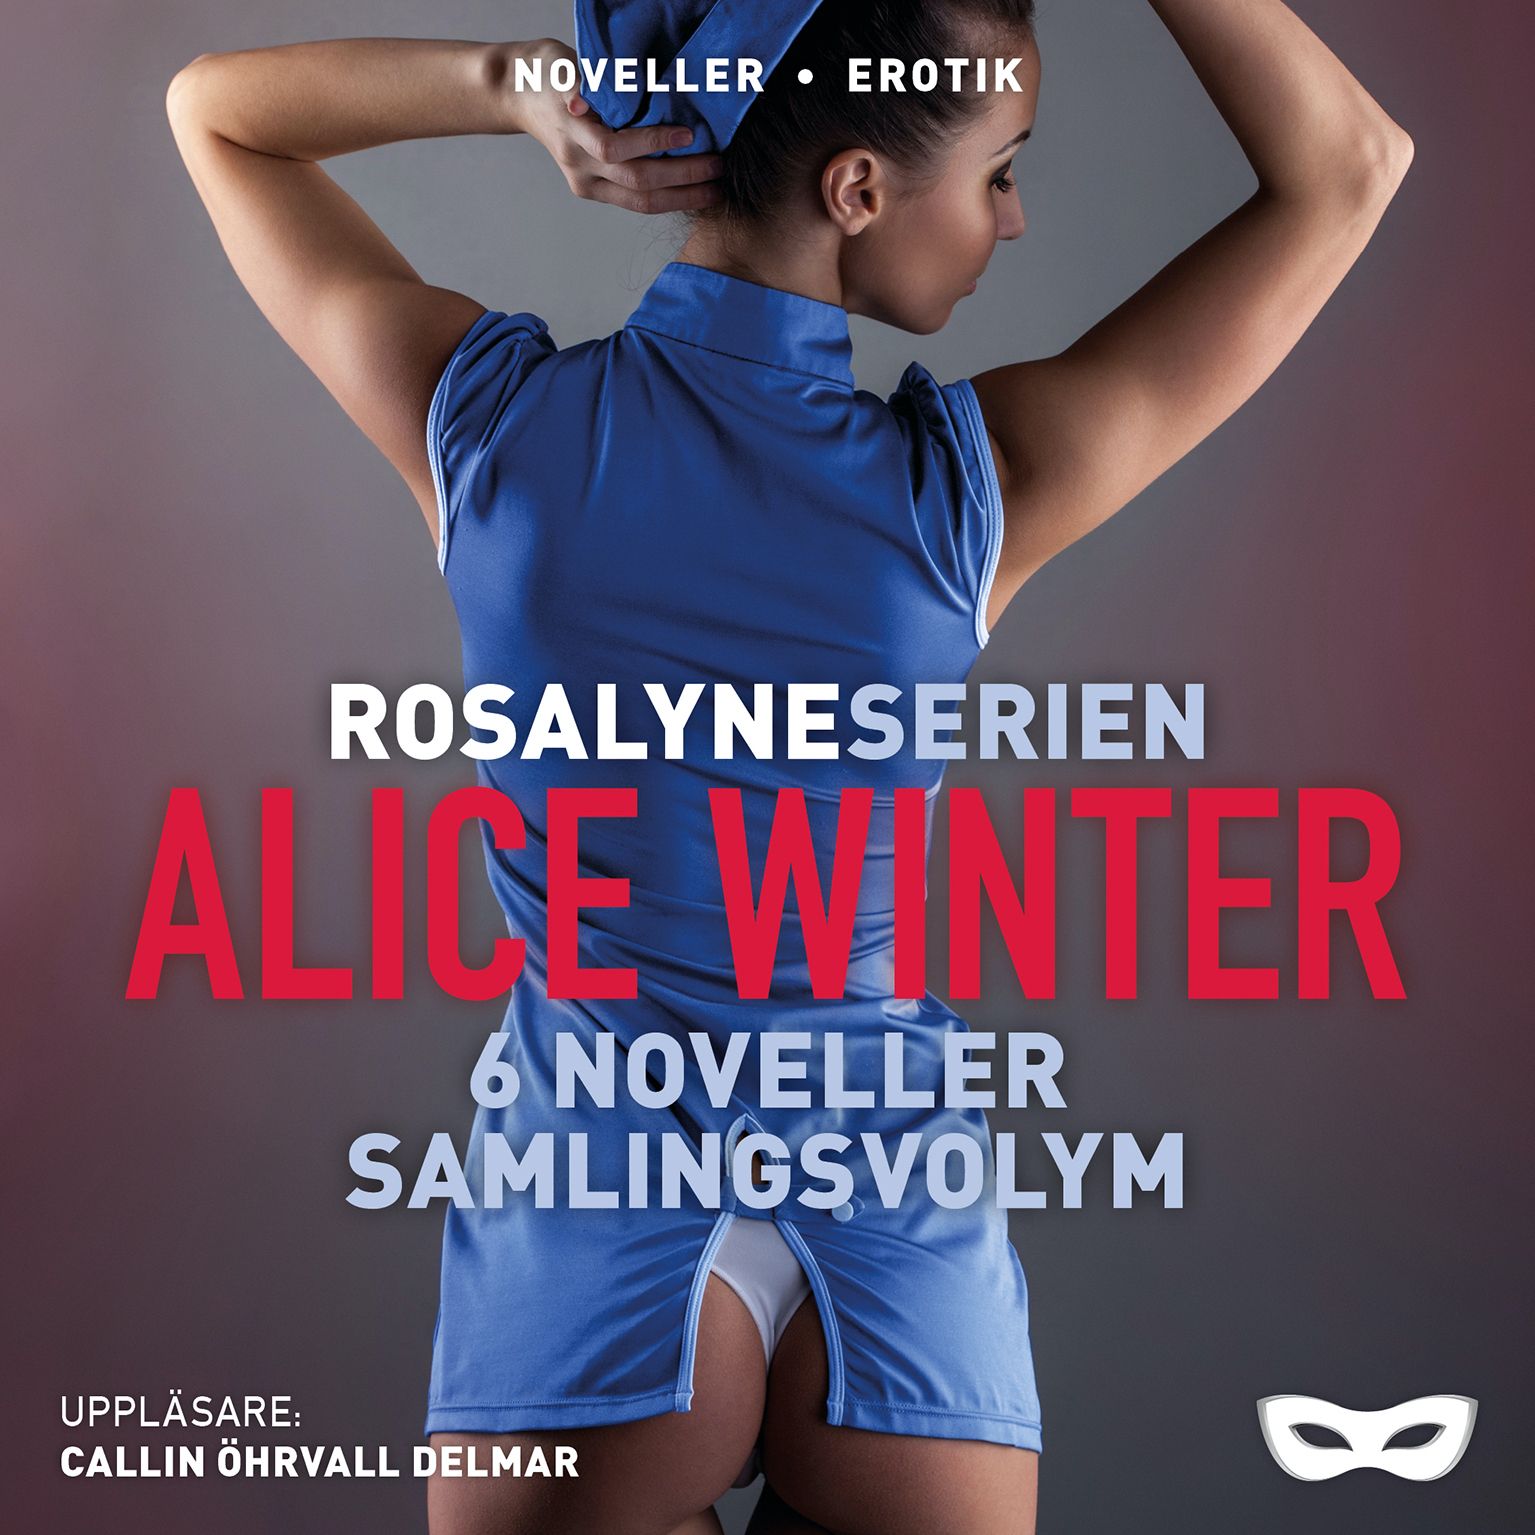 Rosalyneserien, lydbog af Alice Winter